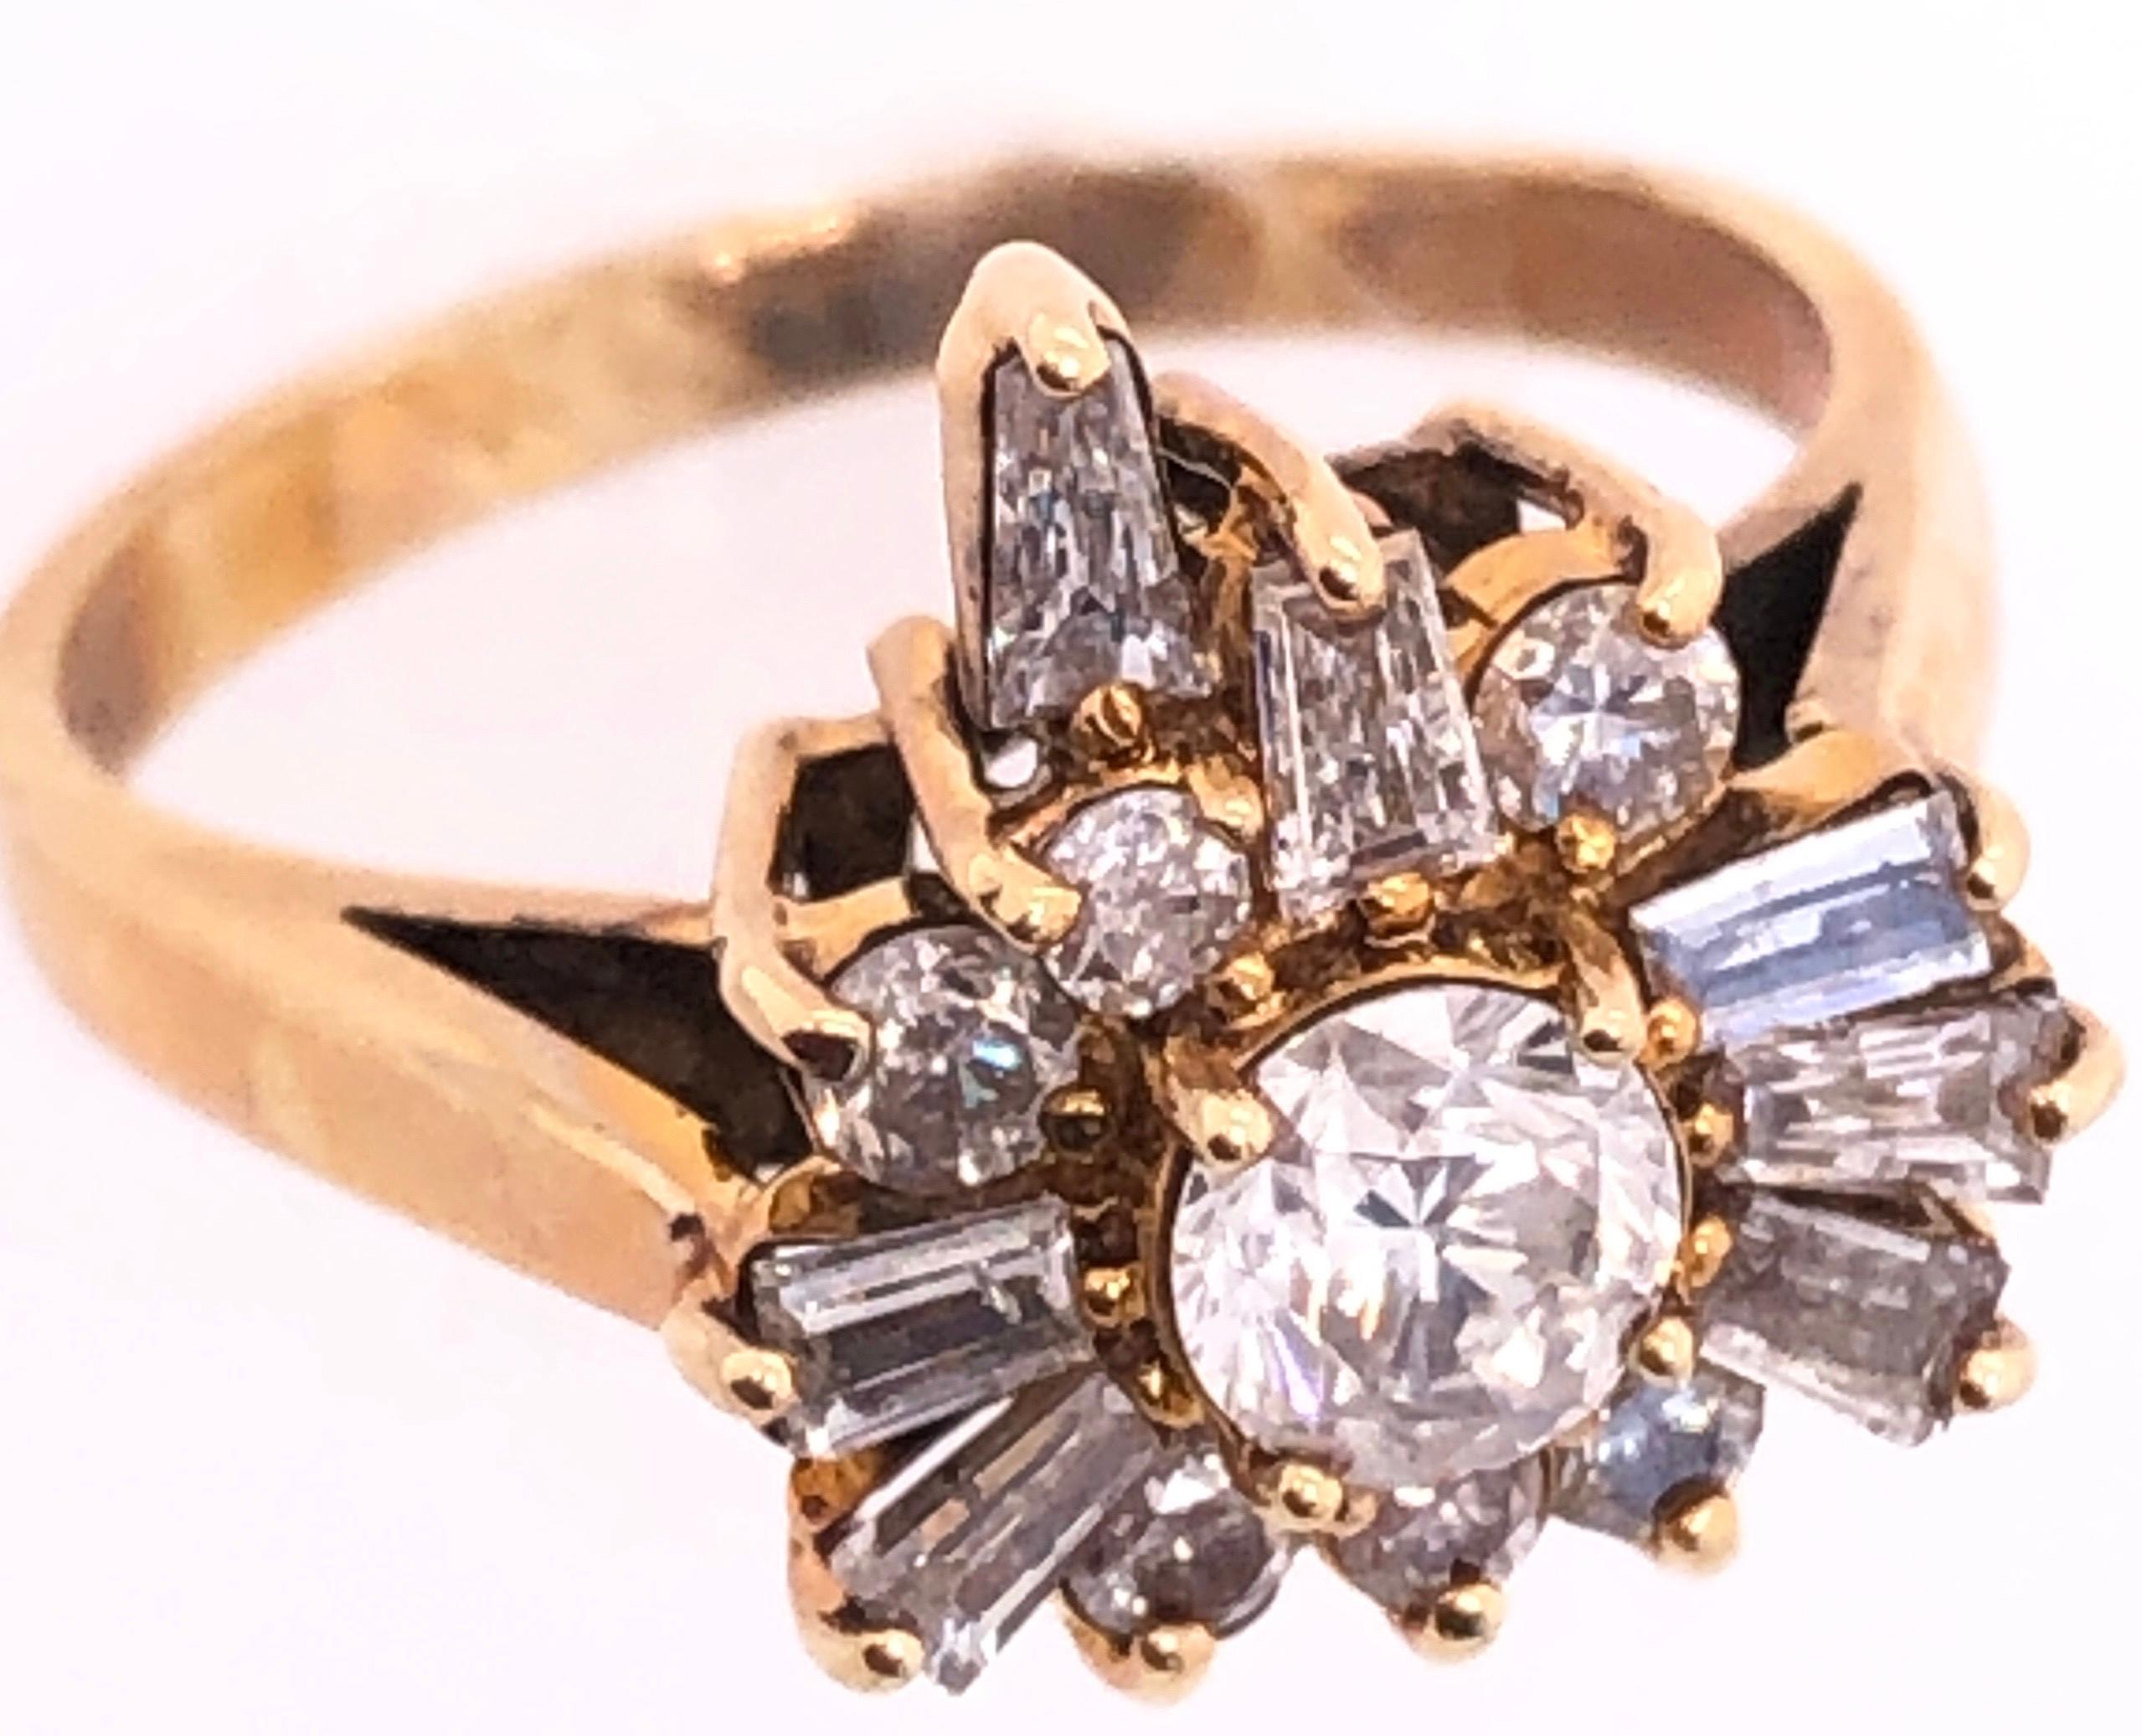 14 Karat Gelbgold Fashion Ring mit Diamanten.
1,00 Gesamtgewicht der Diamanten.
Größe 7.25
4 Gramm Gesamtgewicht.